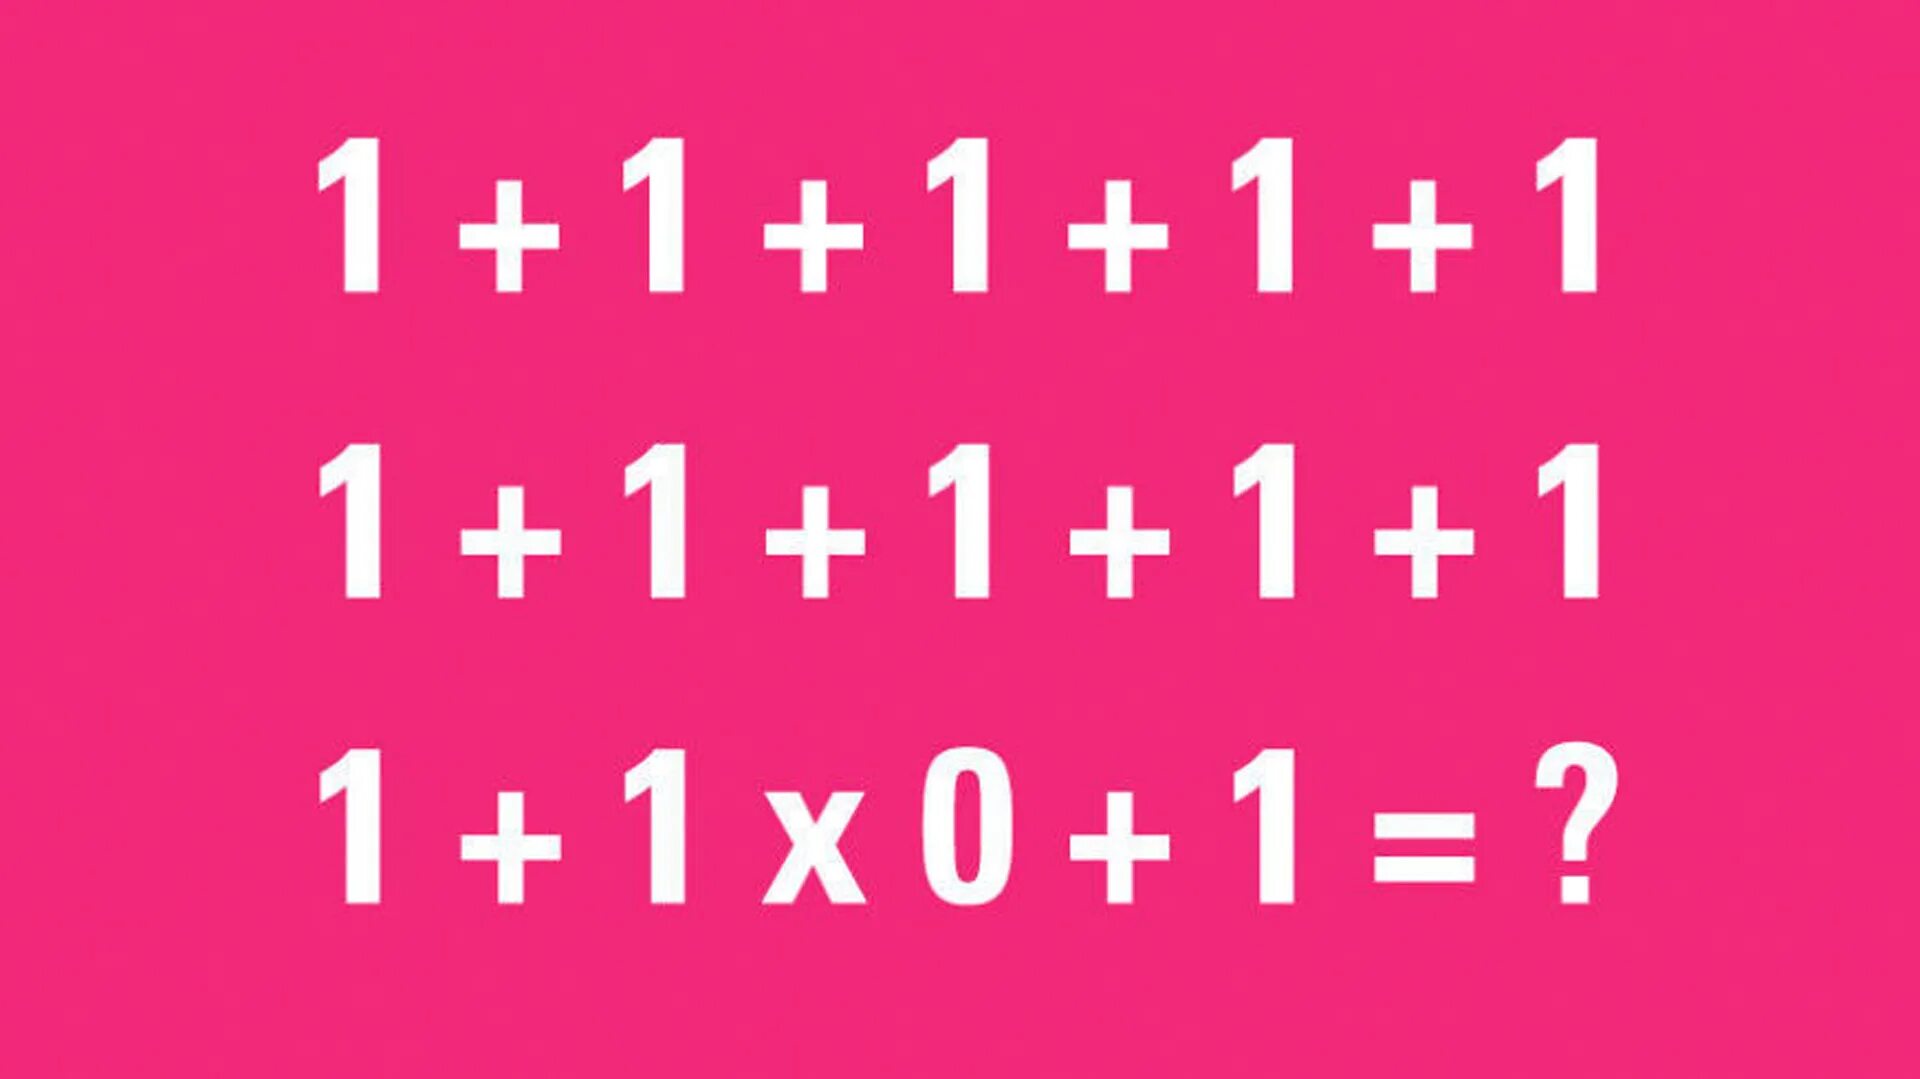 1.1 1.1 user. Загадка 1+1+1+1+1. 90 Людей не могут решить эту задачу. Головоломка 1+1+1+1+1+1+1+1+1+1+1+1 0+1 ответ. Загадки на логику с ответами 1+1+1+1+1 1+1 *0.